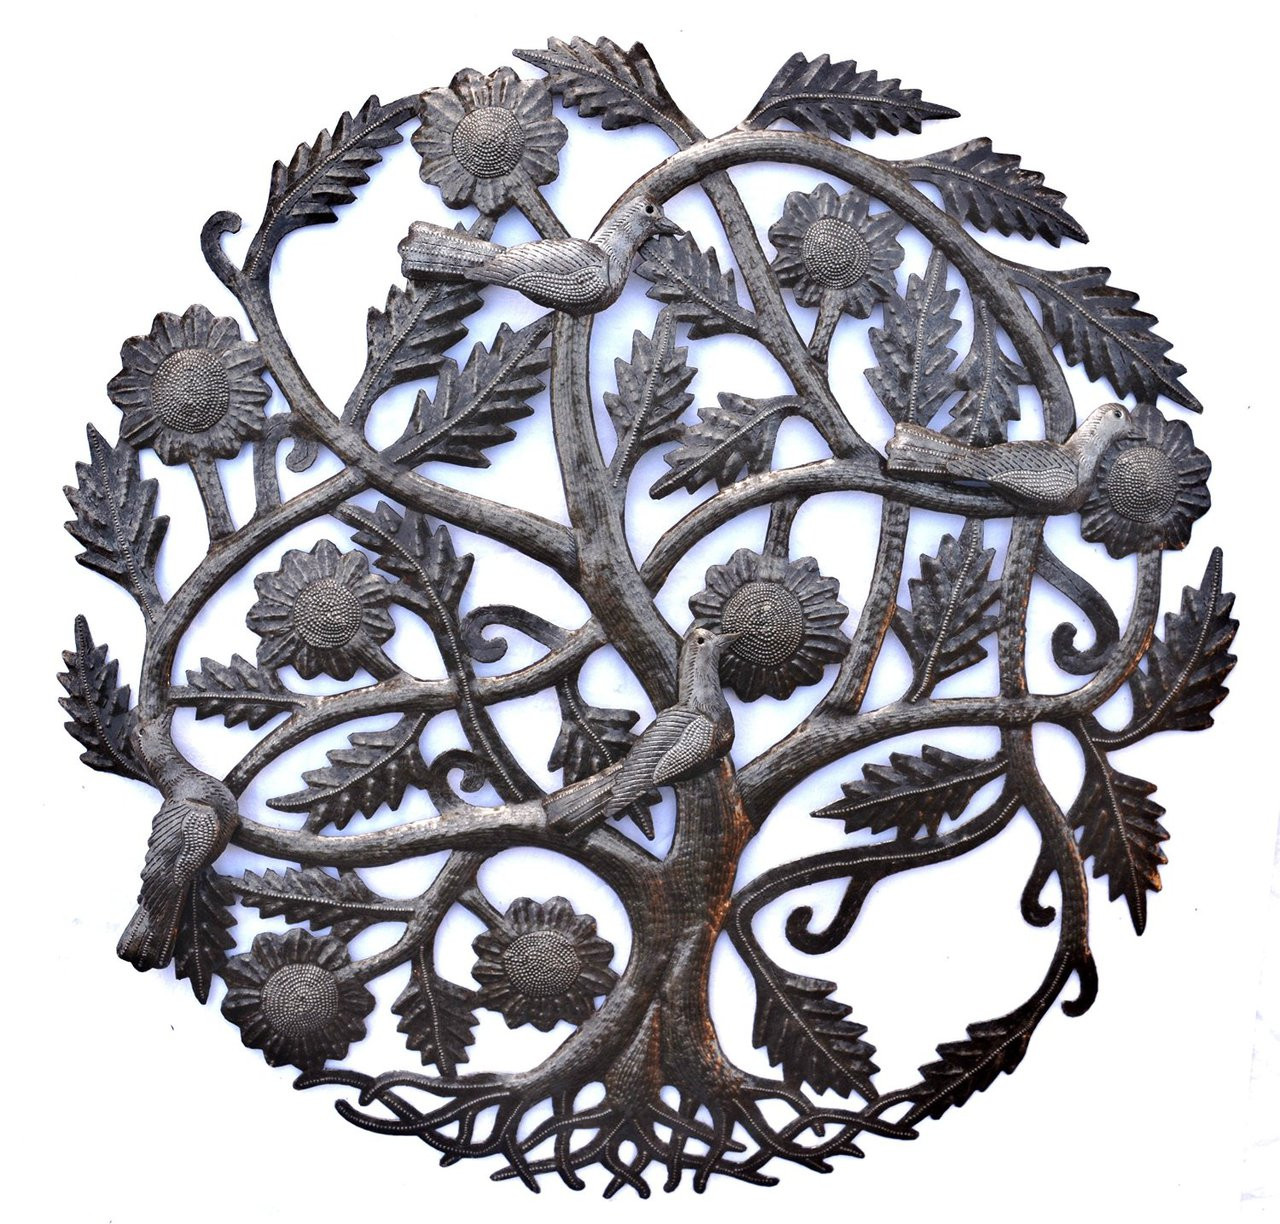 Haiti Metal Art, Tree of Life, with birds, Family Tree Roots, Handmade